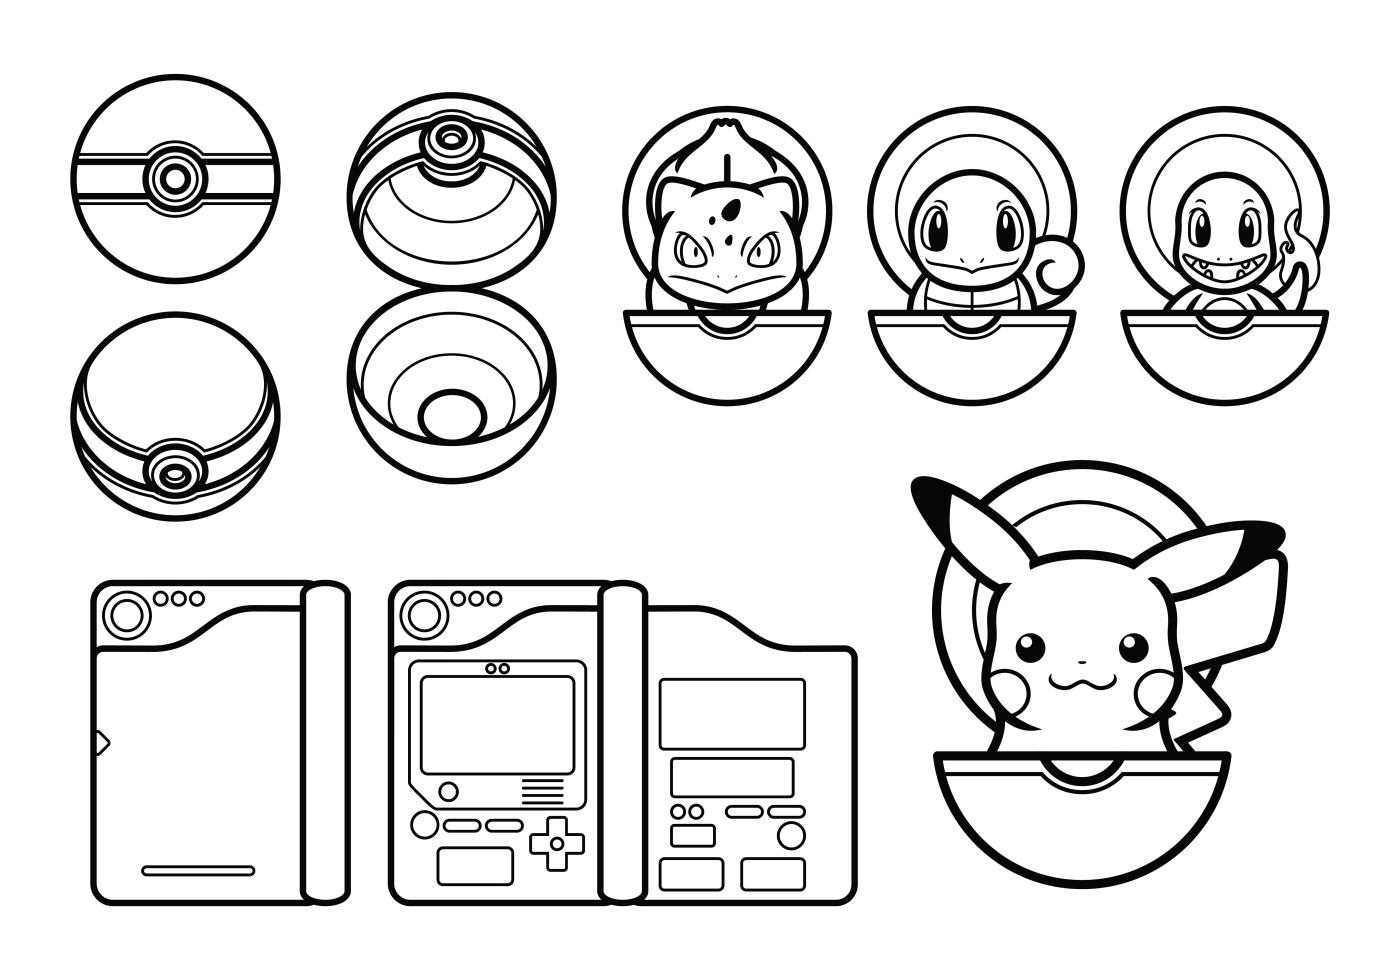 ícone De Pokebola Azul E Branco Com Vetor De Espaço De Texto Vetor PNG ,  Logotipo, Crianças, Preto Imagem PNG e Vetor Para Download Gratuito